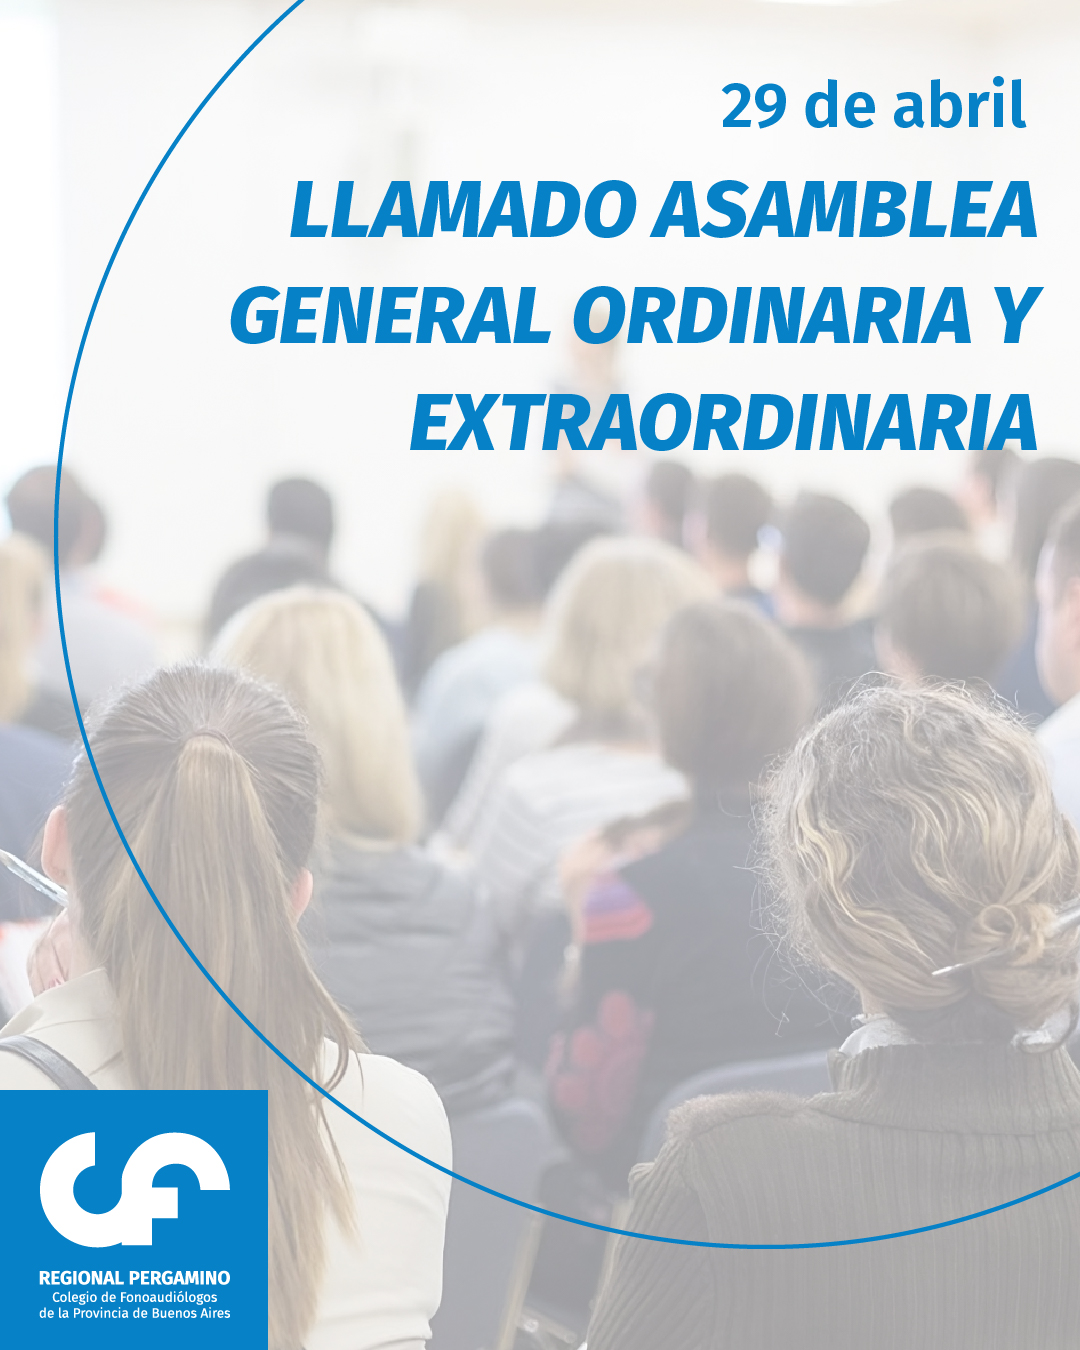 LLAMADO ASAMBLEA GENERAL ORDINARIA Y EXTRAORDINARIA